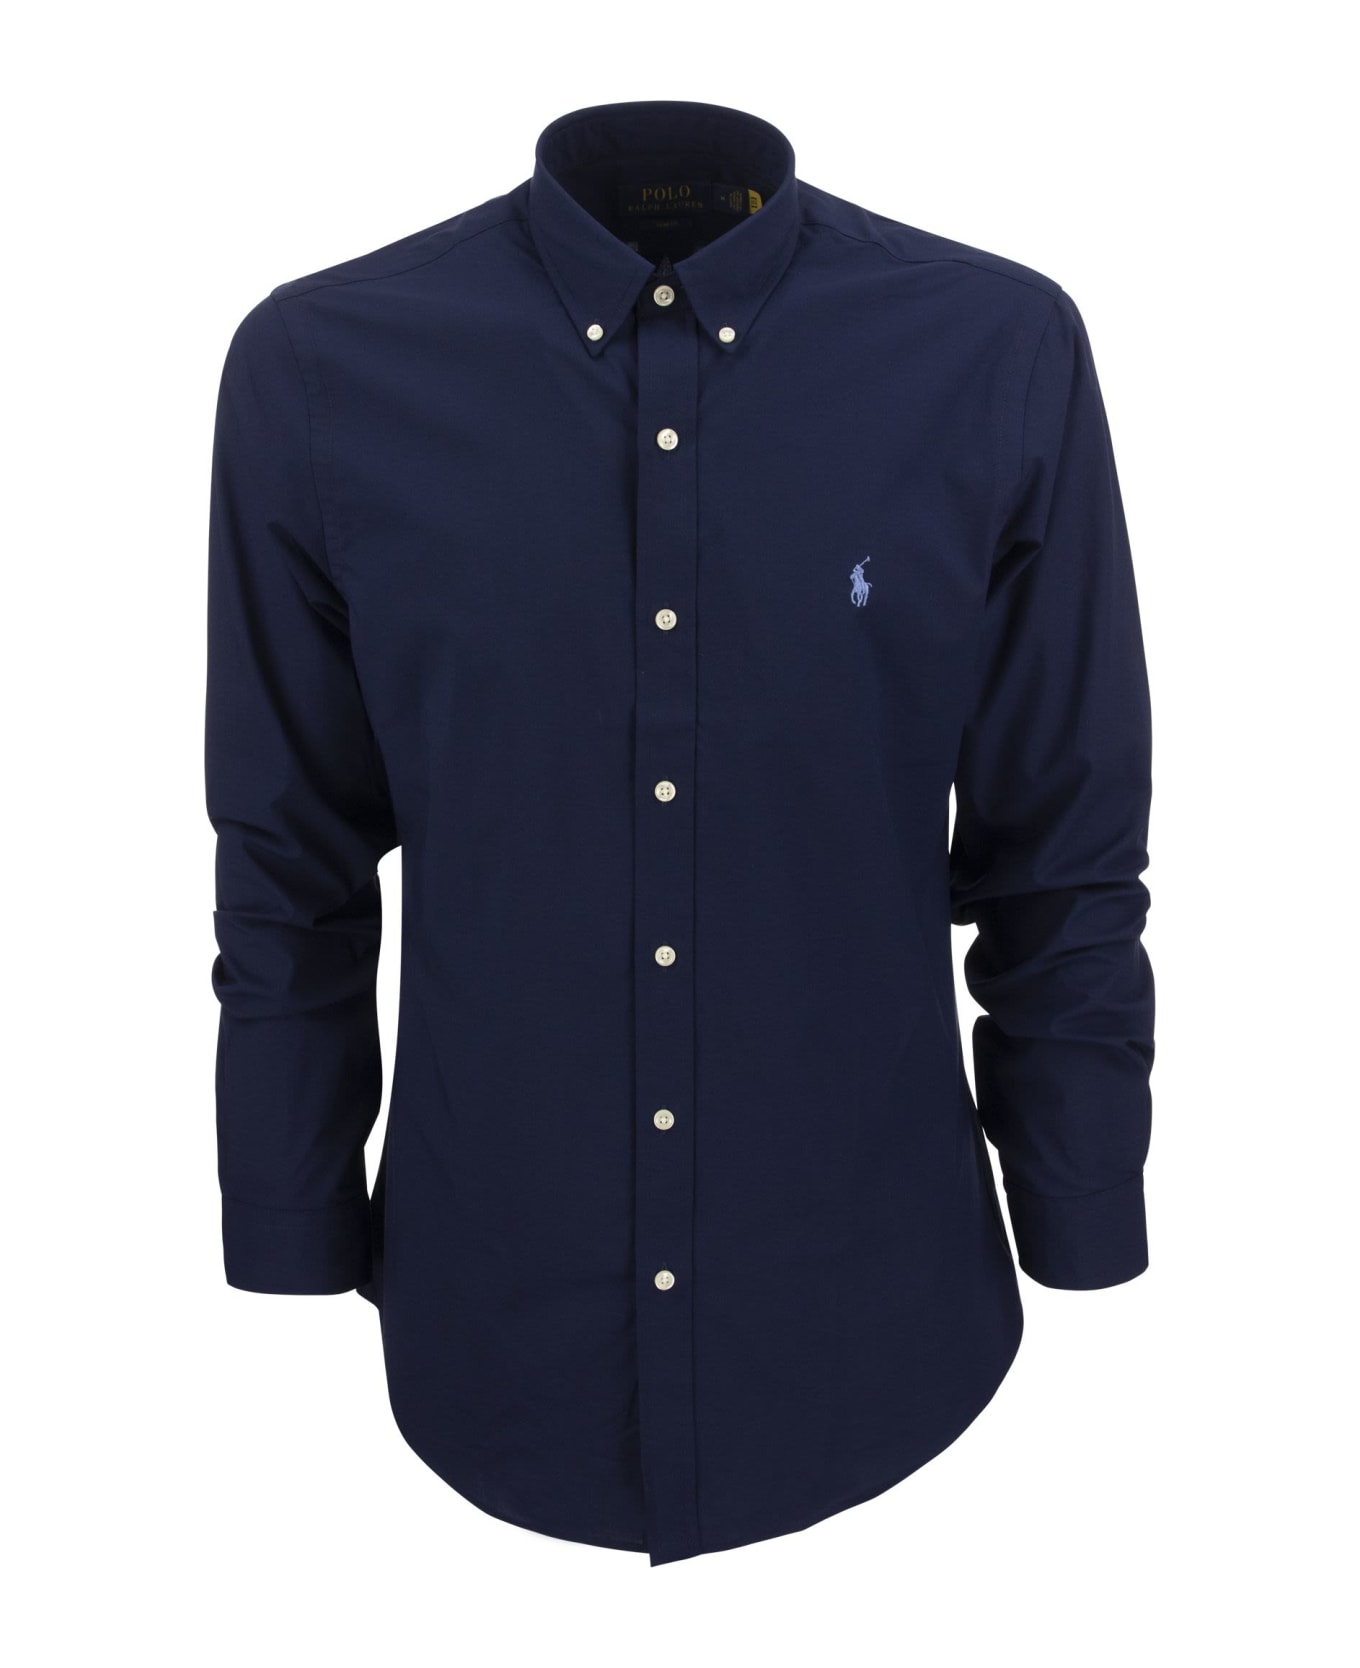 Ralph Lauren Shirt - Navy Blue